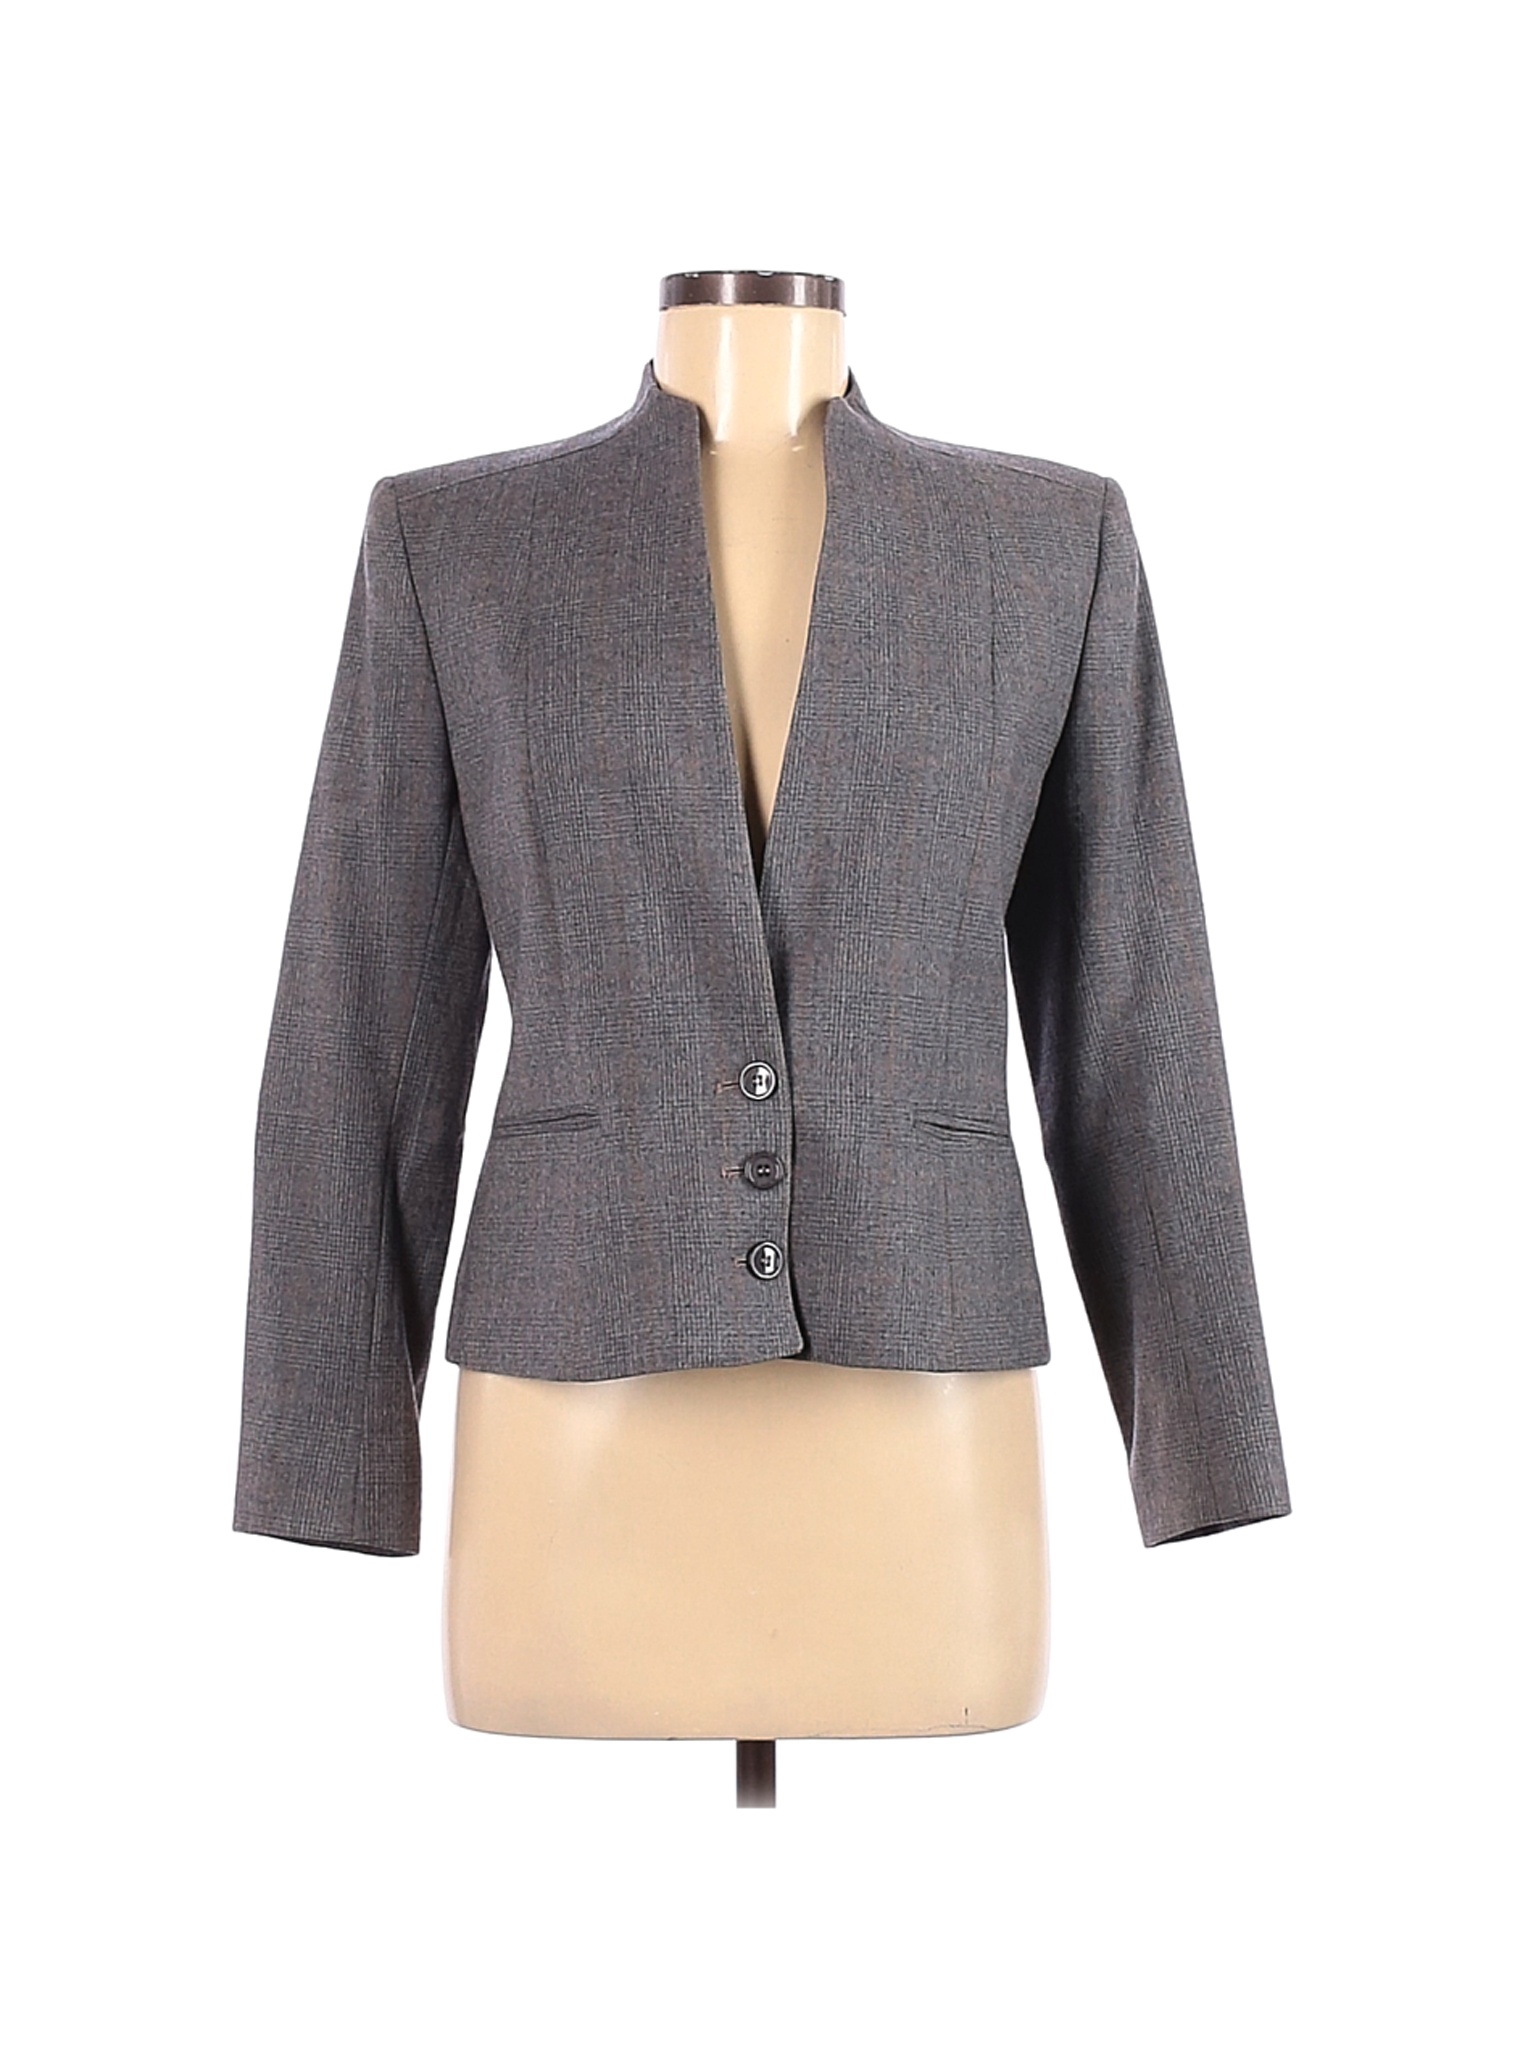 Harve Benard Women Gray Wool Blazer 8 | eBay